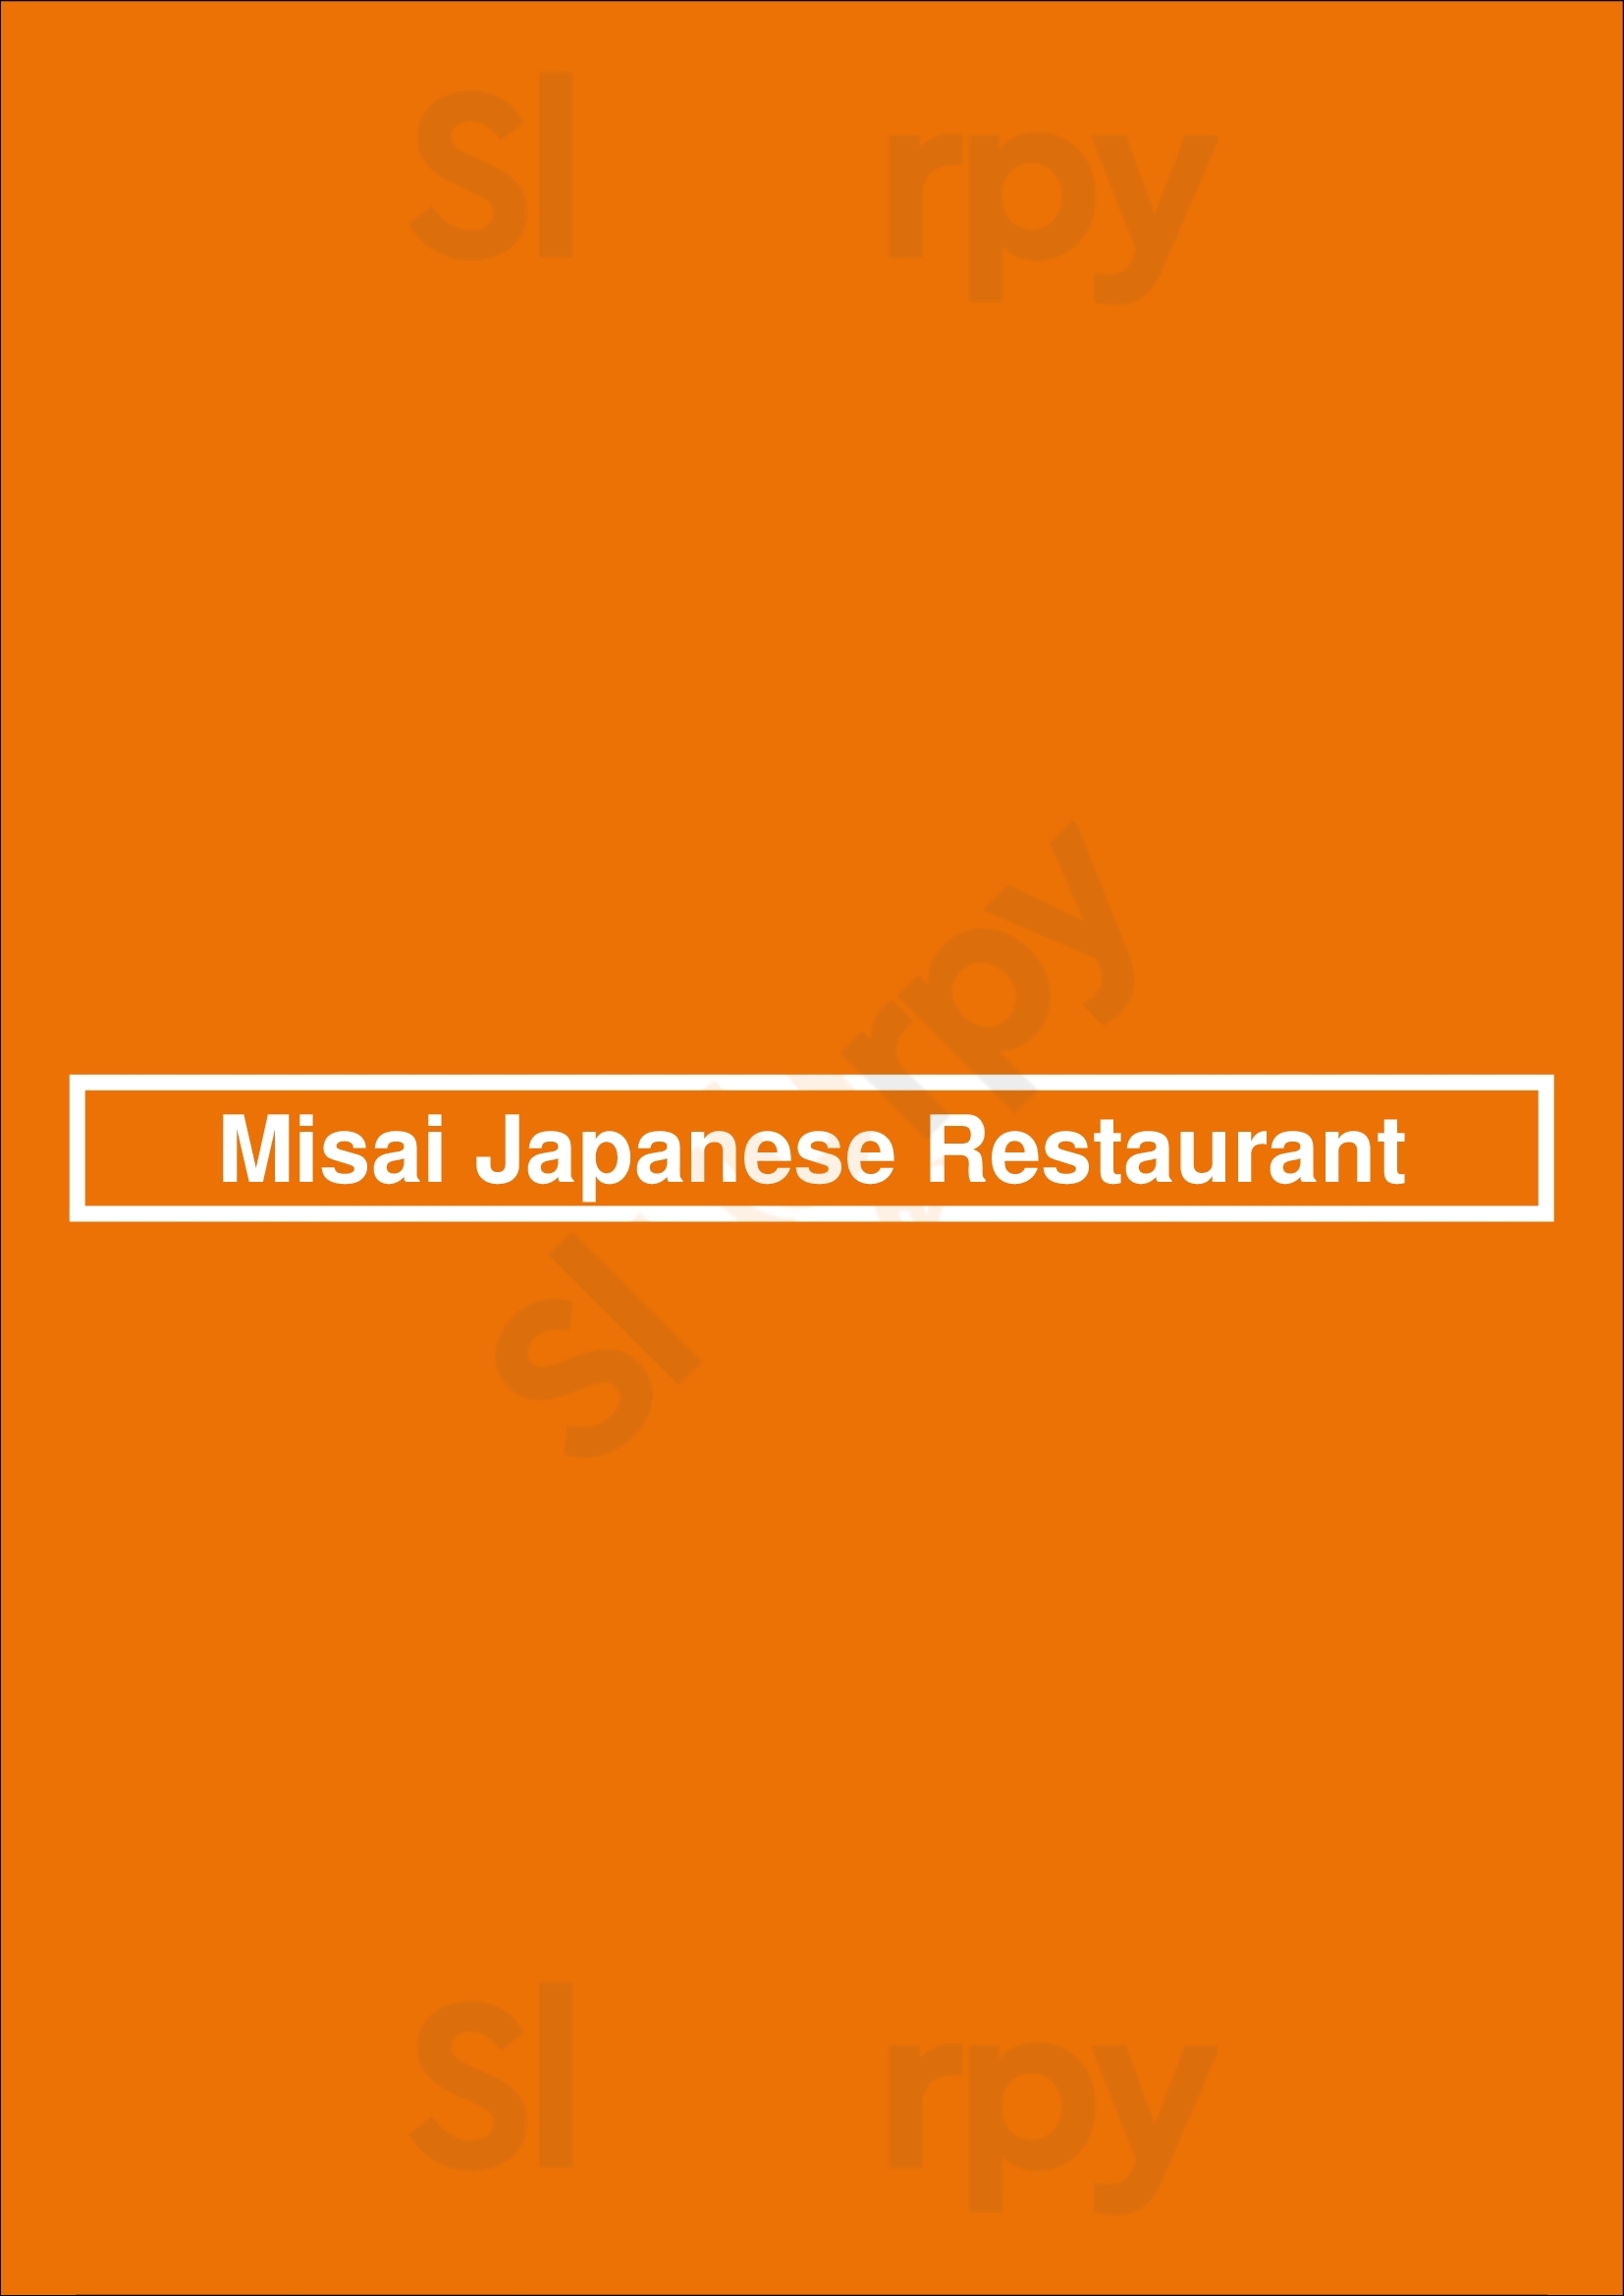 Misai Japanese Restaurant Calgary Menu - 1